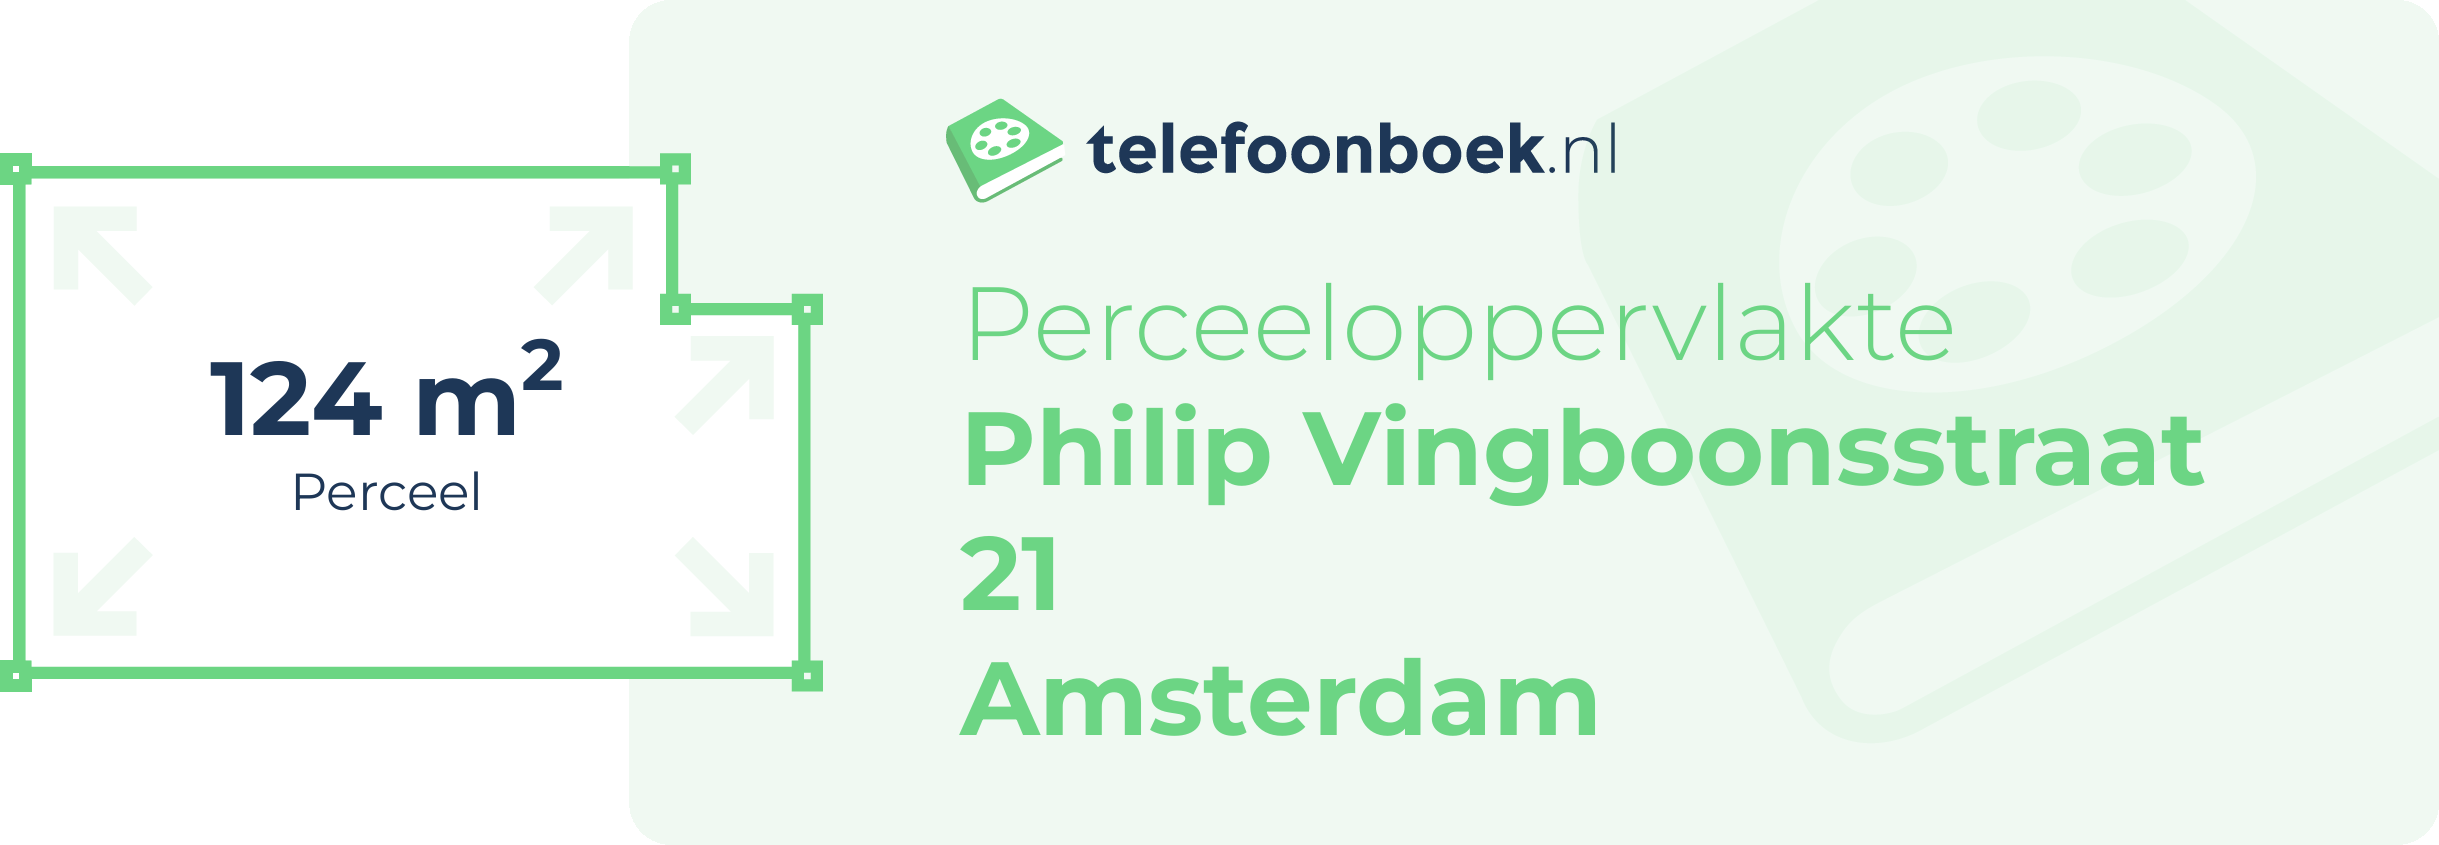 Perceeloppervlakte Philip Vingboonsstraat 21 Amsterdam